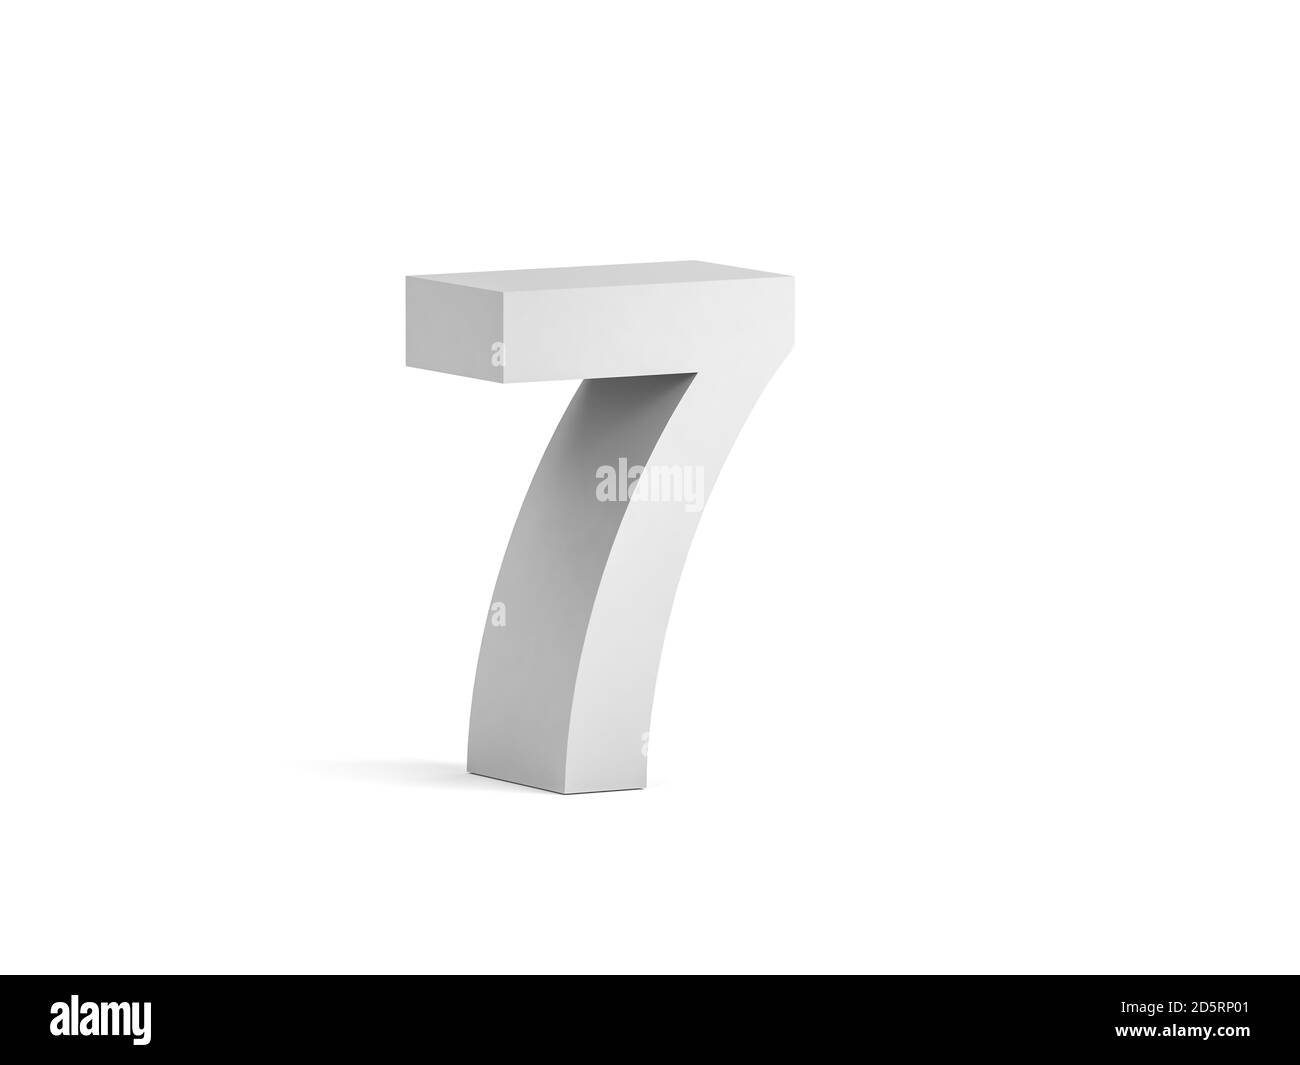 Cifra bianca in grassetto 7 isolata su sfondo bianco con ombreggiatura morbida, rappresentazione 3d Foto Stock